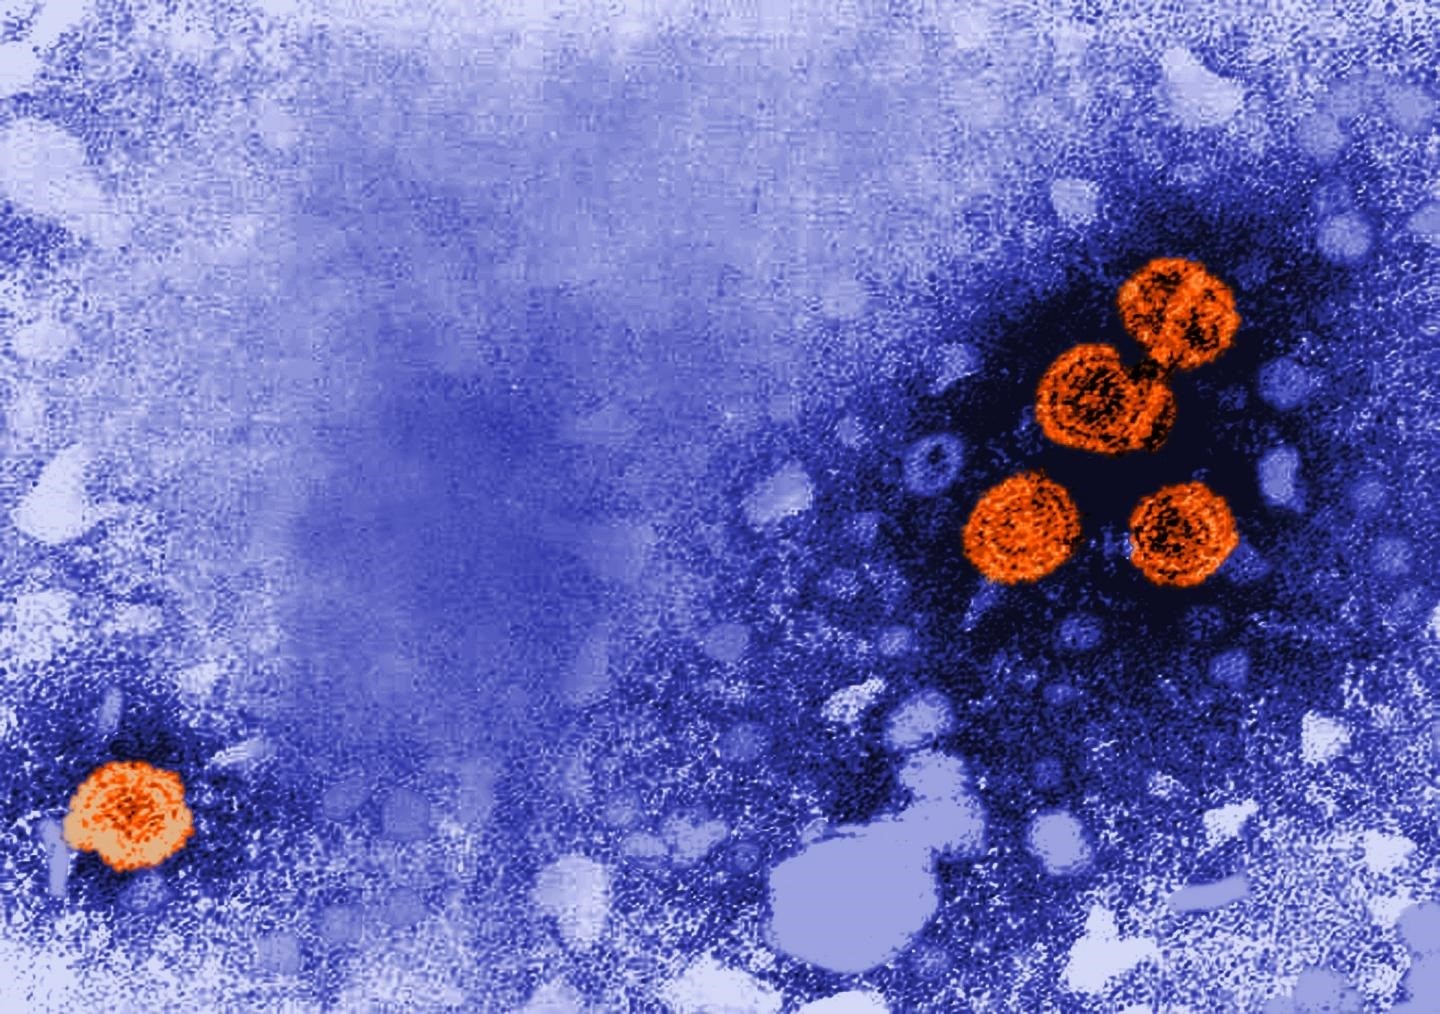 Así es un imagen de microscopía electrónica que, coloreada digitalmente, revela la presencia de viriones de la hepatitis B en color naranja (foto: CDC/DR. ERSKINE PALMER)